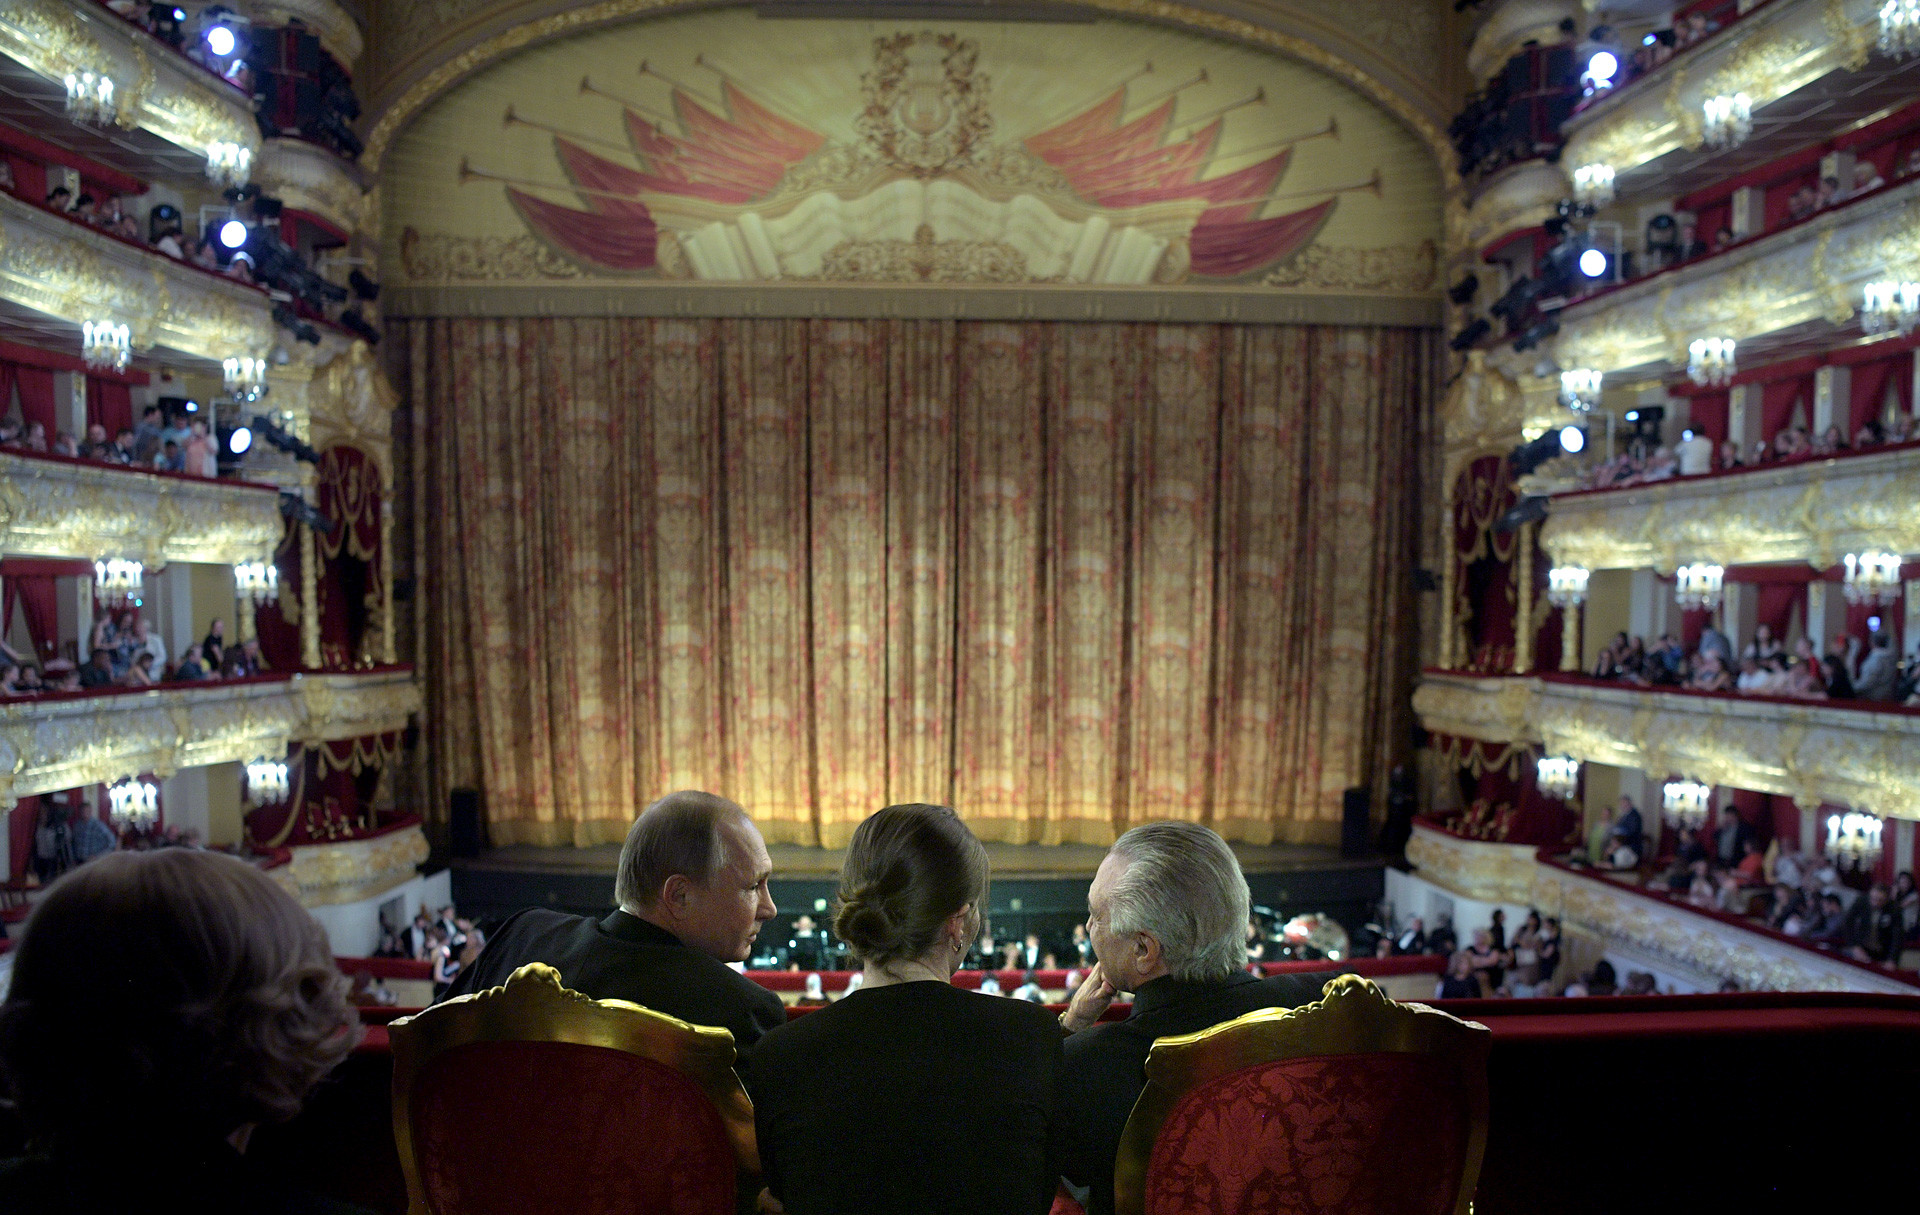 ウラジーミル・プーチン大統領とブラジルのミシェル・テメル大統領、ボリショイ劇場